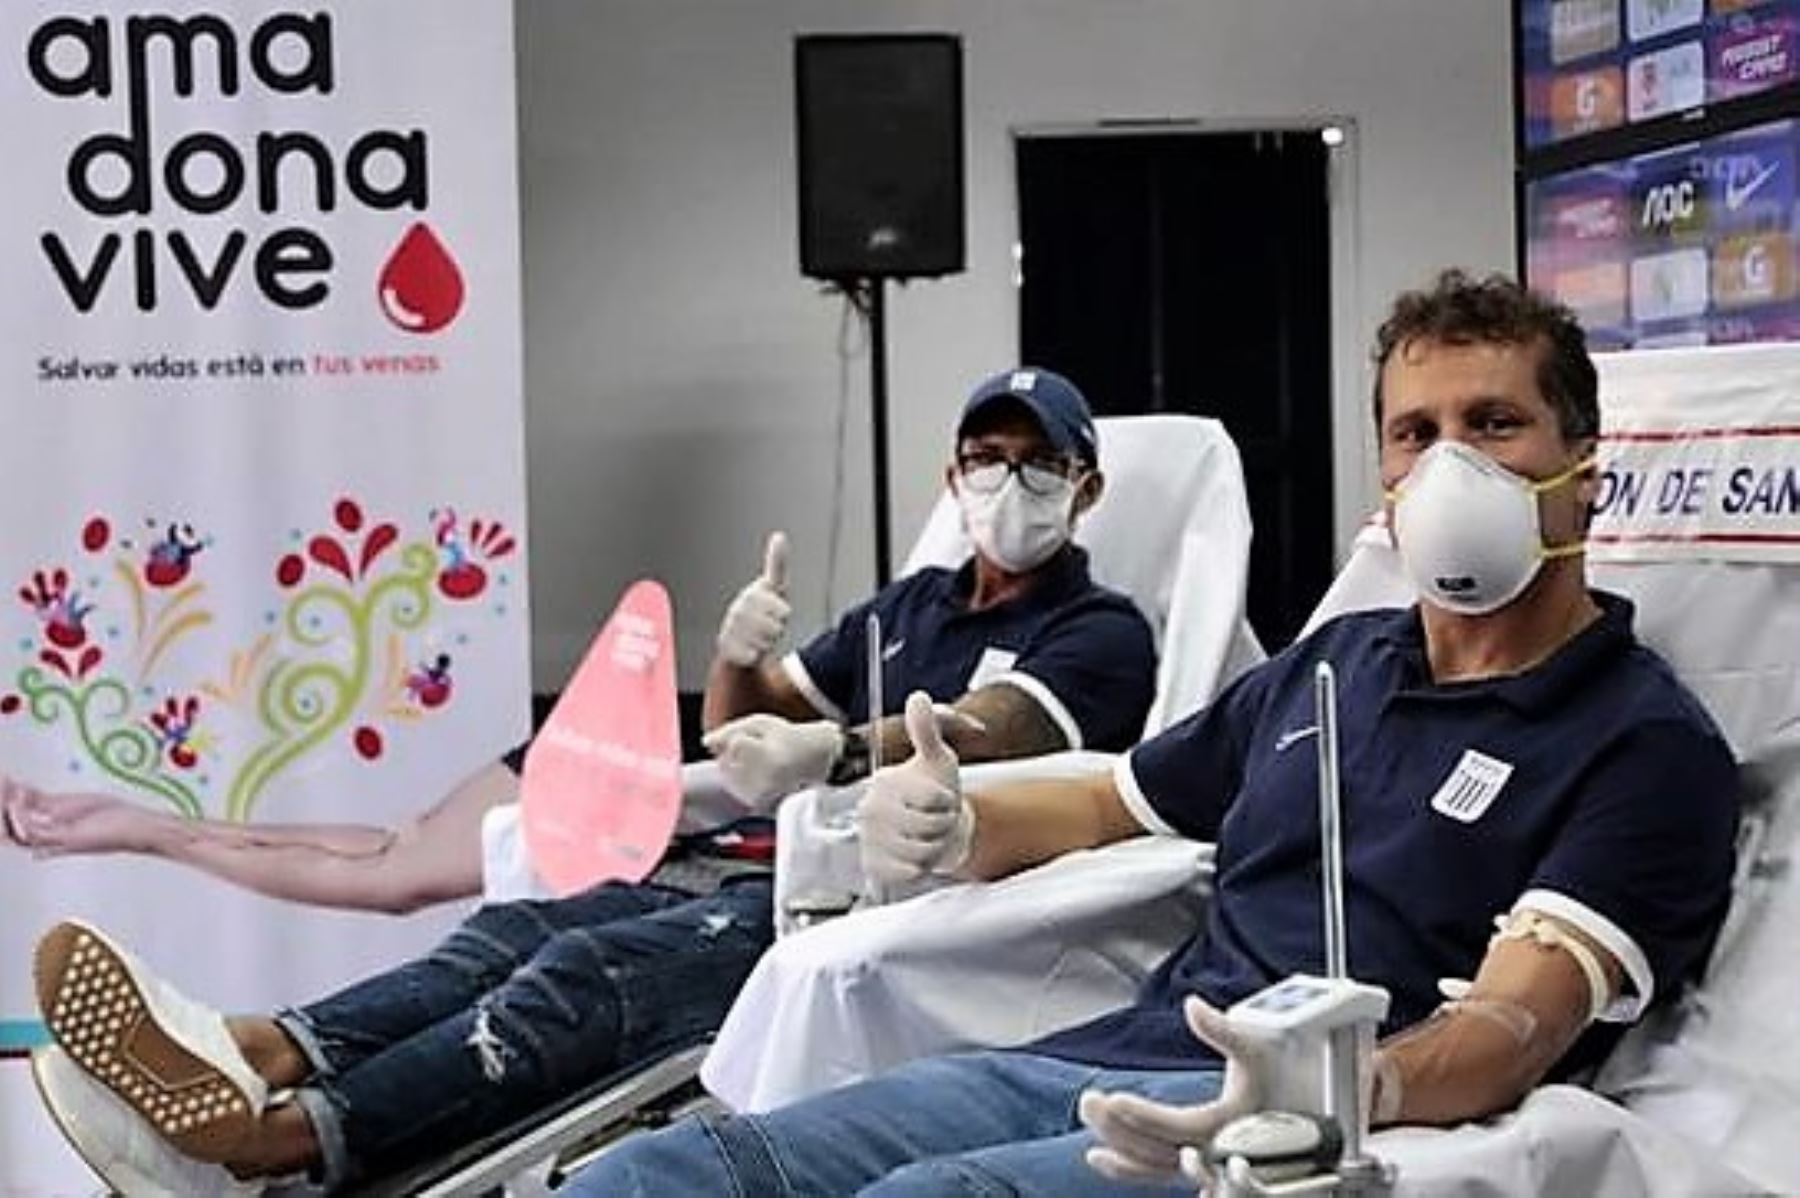 Los futbolistas Leao Butrón y Rinaldo Cruzado, referentes de Alianza Lima, participan en una campaña solidaria de donación de sangre organizada por el Minsa.